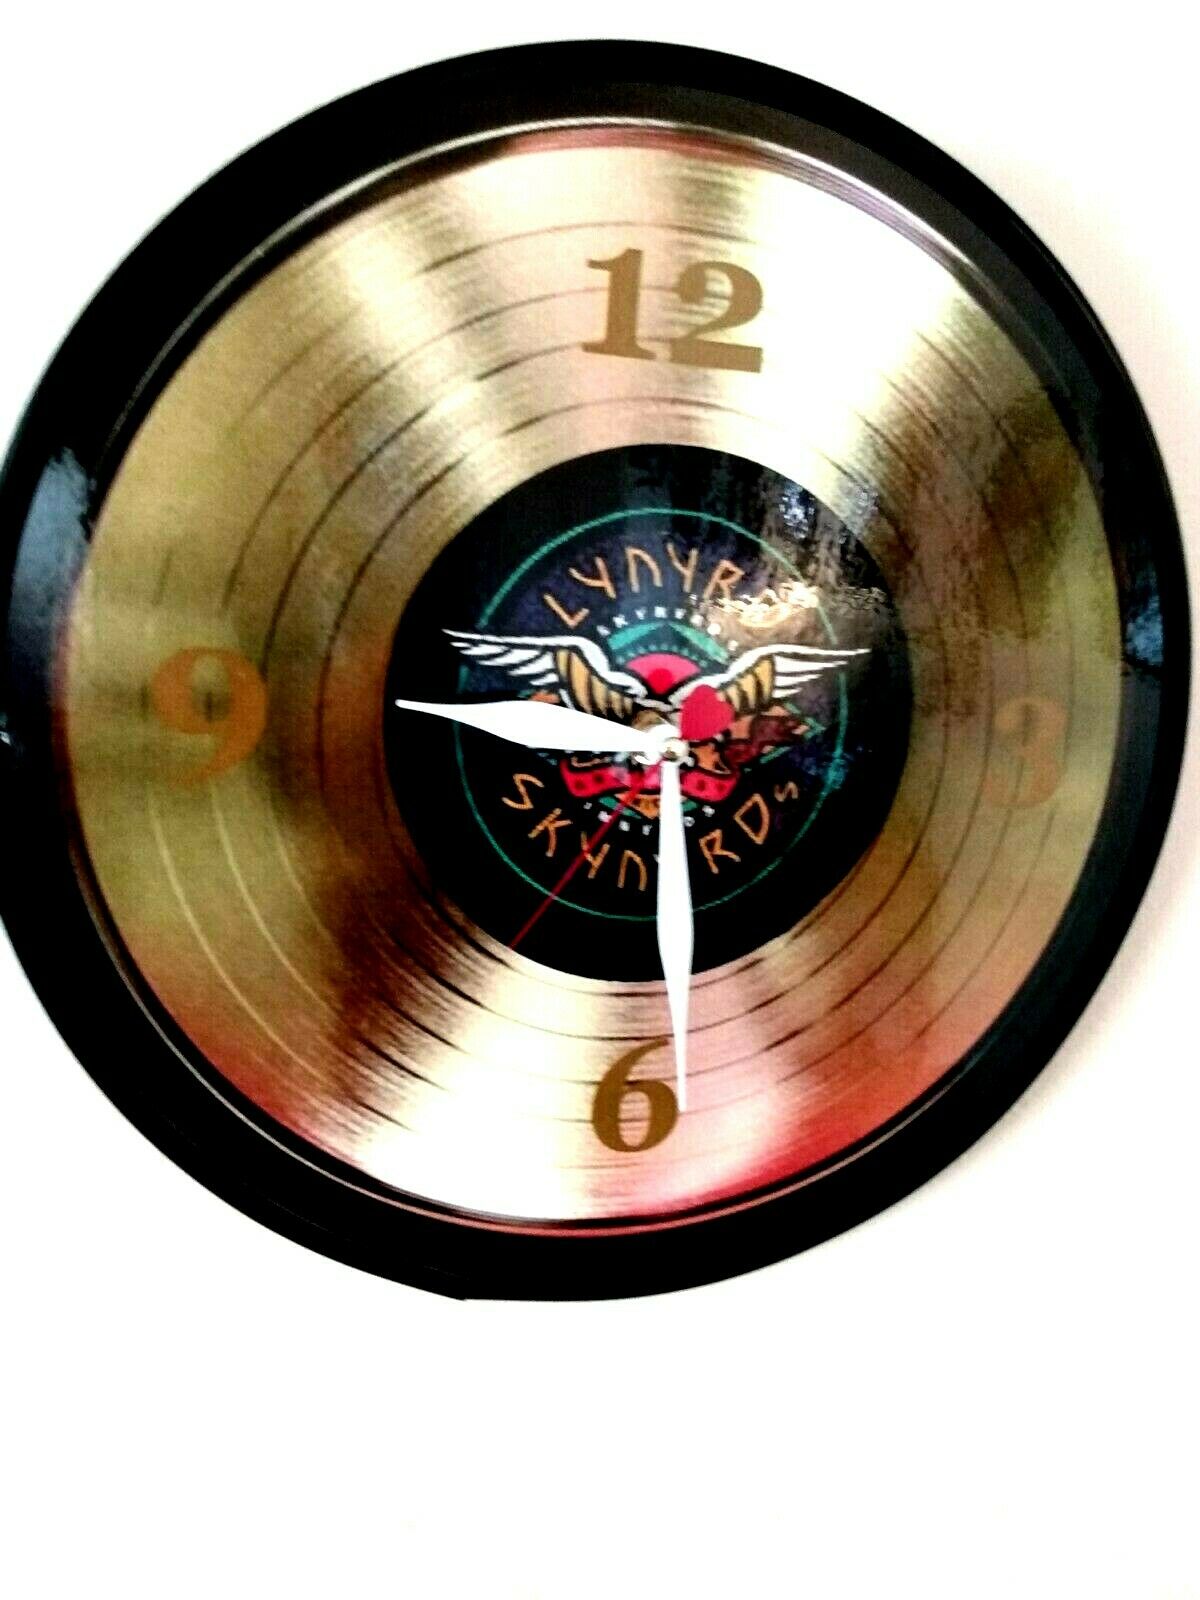 Lynyrd Skynrd -  - 12 Inch Quartz Wall Clock -mancave- Free Priority Shipping